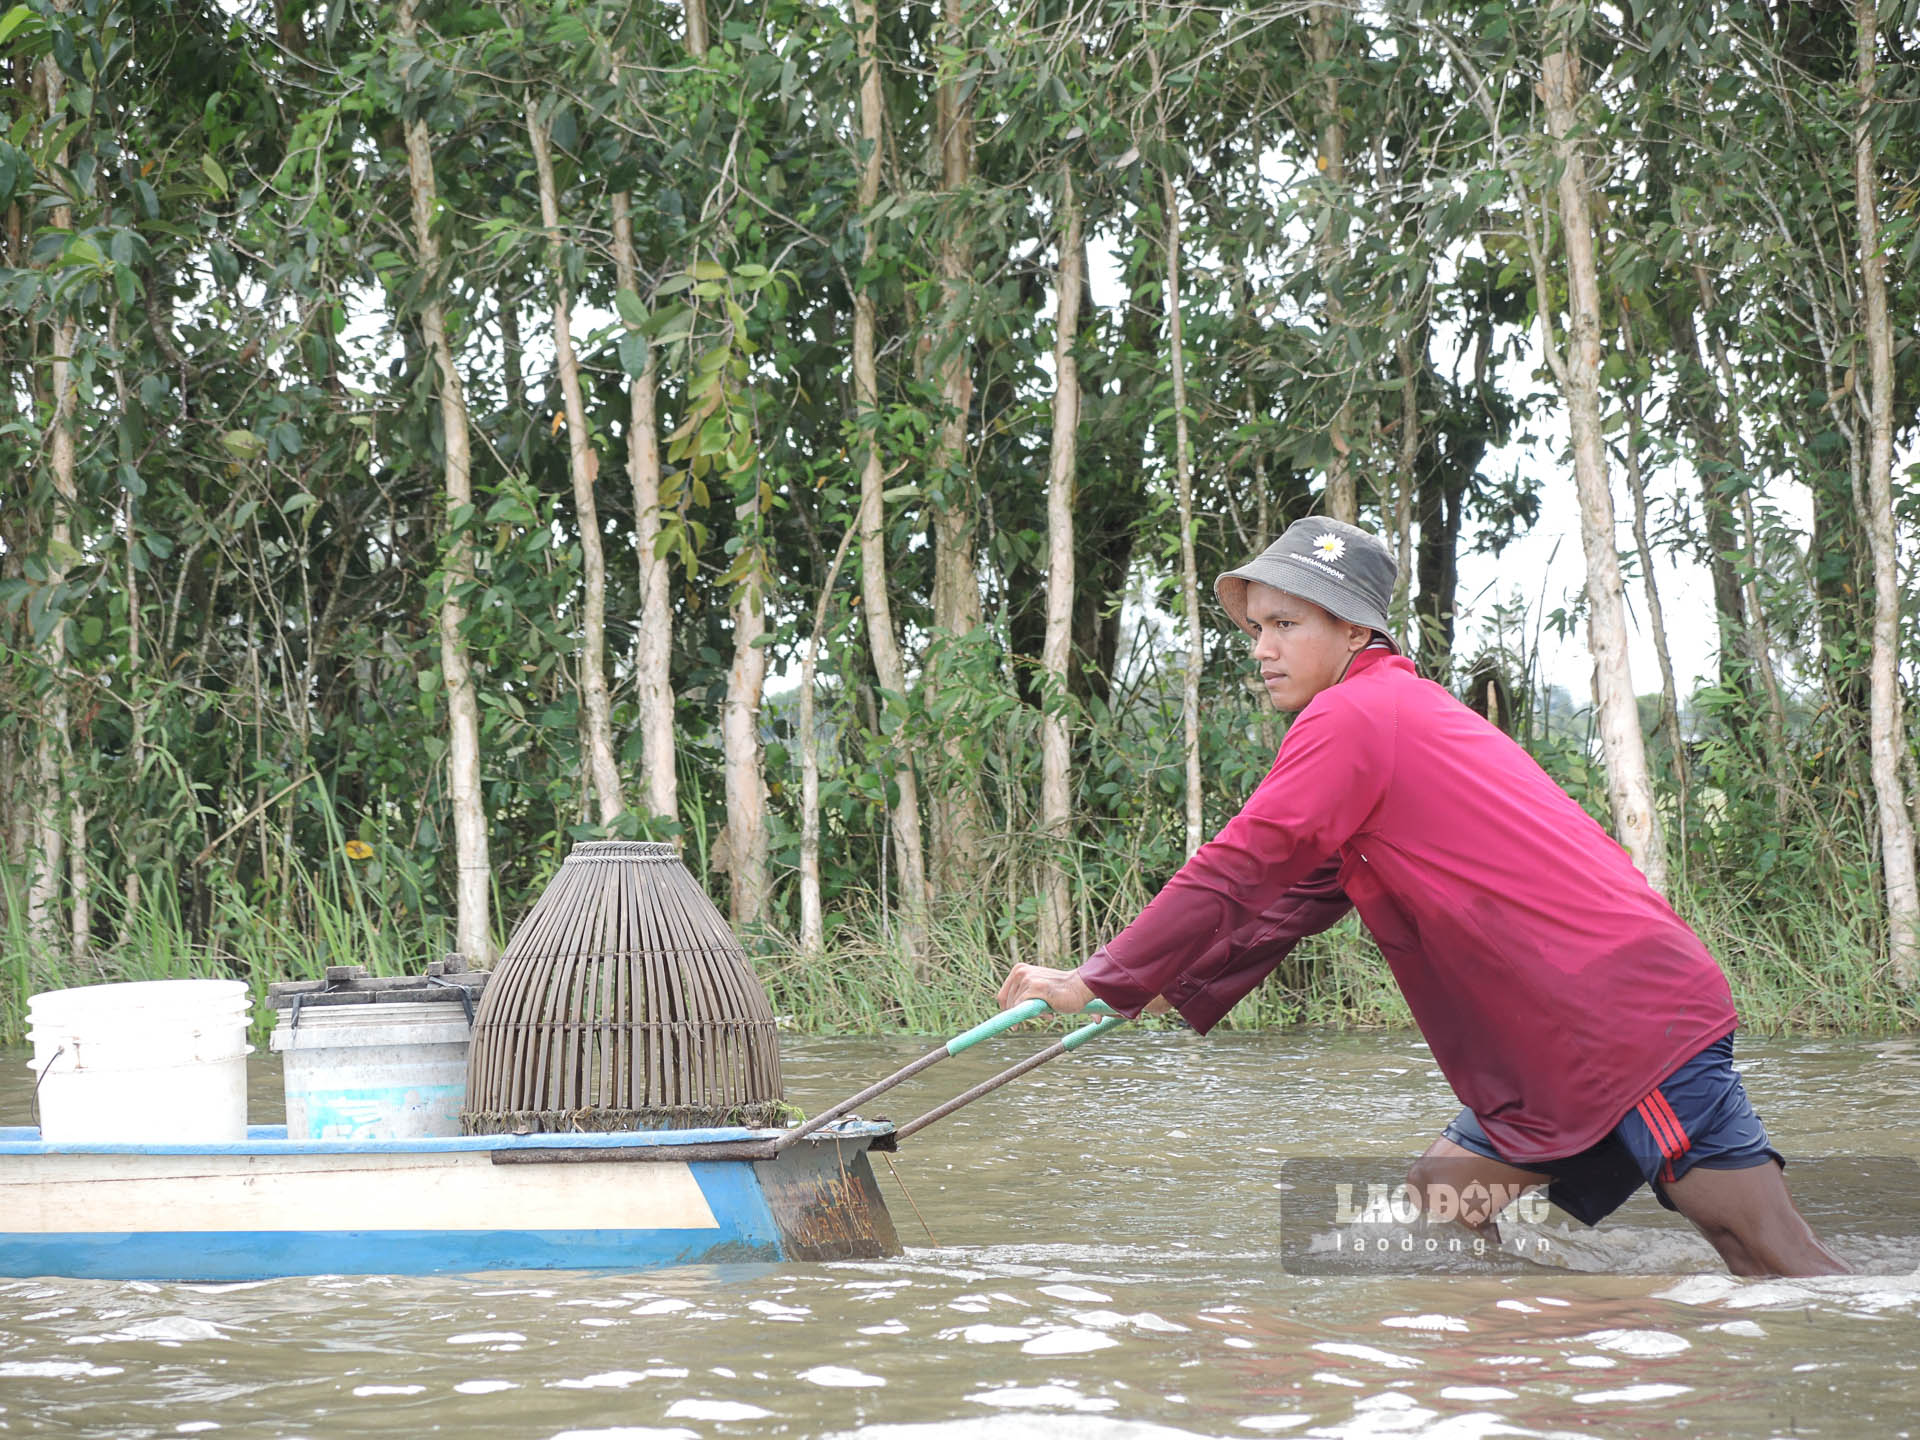 Anh Quách Thanh Sang ở xã Vĩnh Quới (Ngã Năm, Sóc Trăng) làm nghề đẩy côn gần chục năm. Trung bình một ngày bắt khoảng 3 - 4kg cá. Hiện nay, cá được thương lái mua với giá từ 60.000 - 120.000 đồng/kg, thu nhập vài trăm ngàn đồng mỗi ngày. Ảnh: Phương Anh